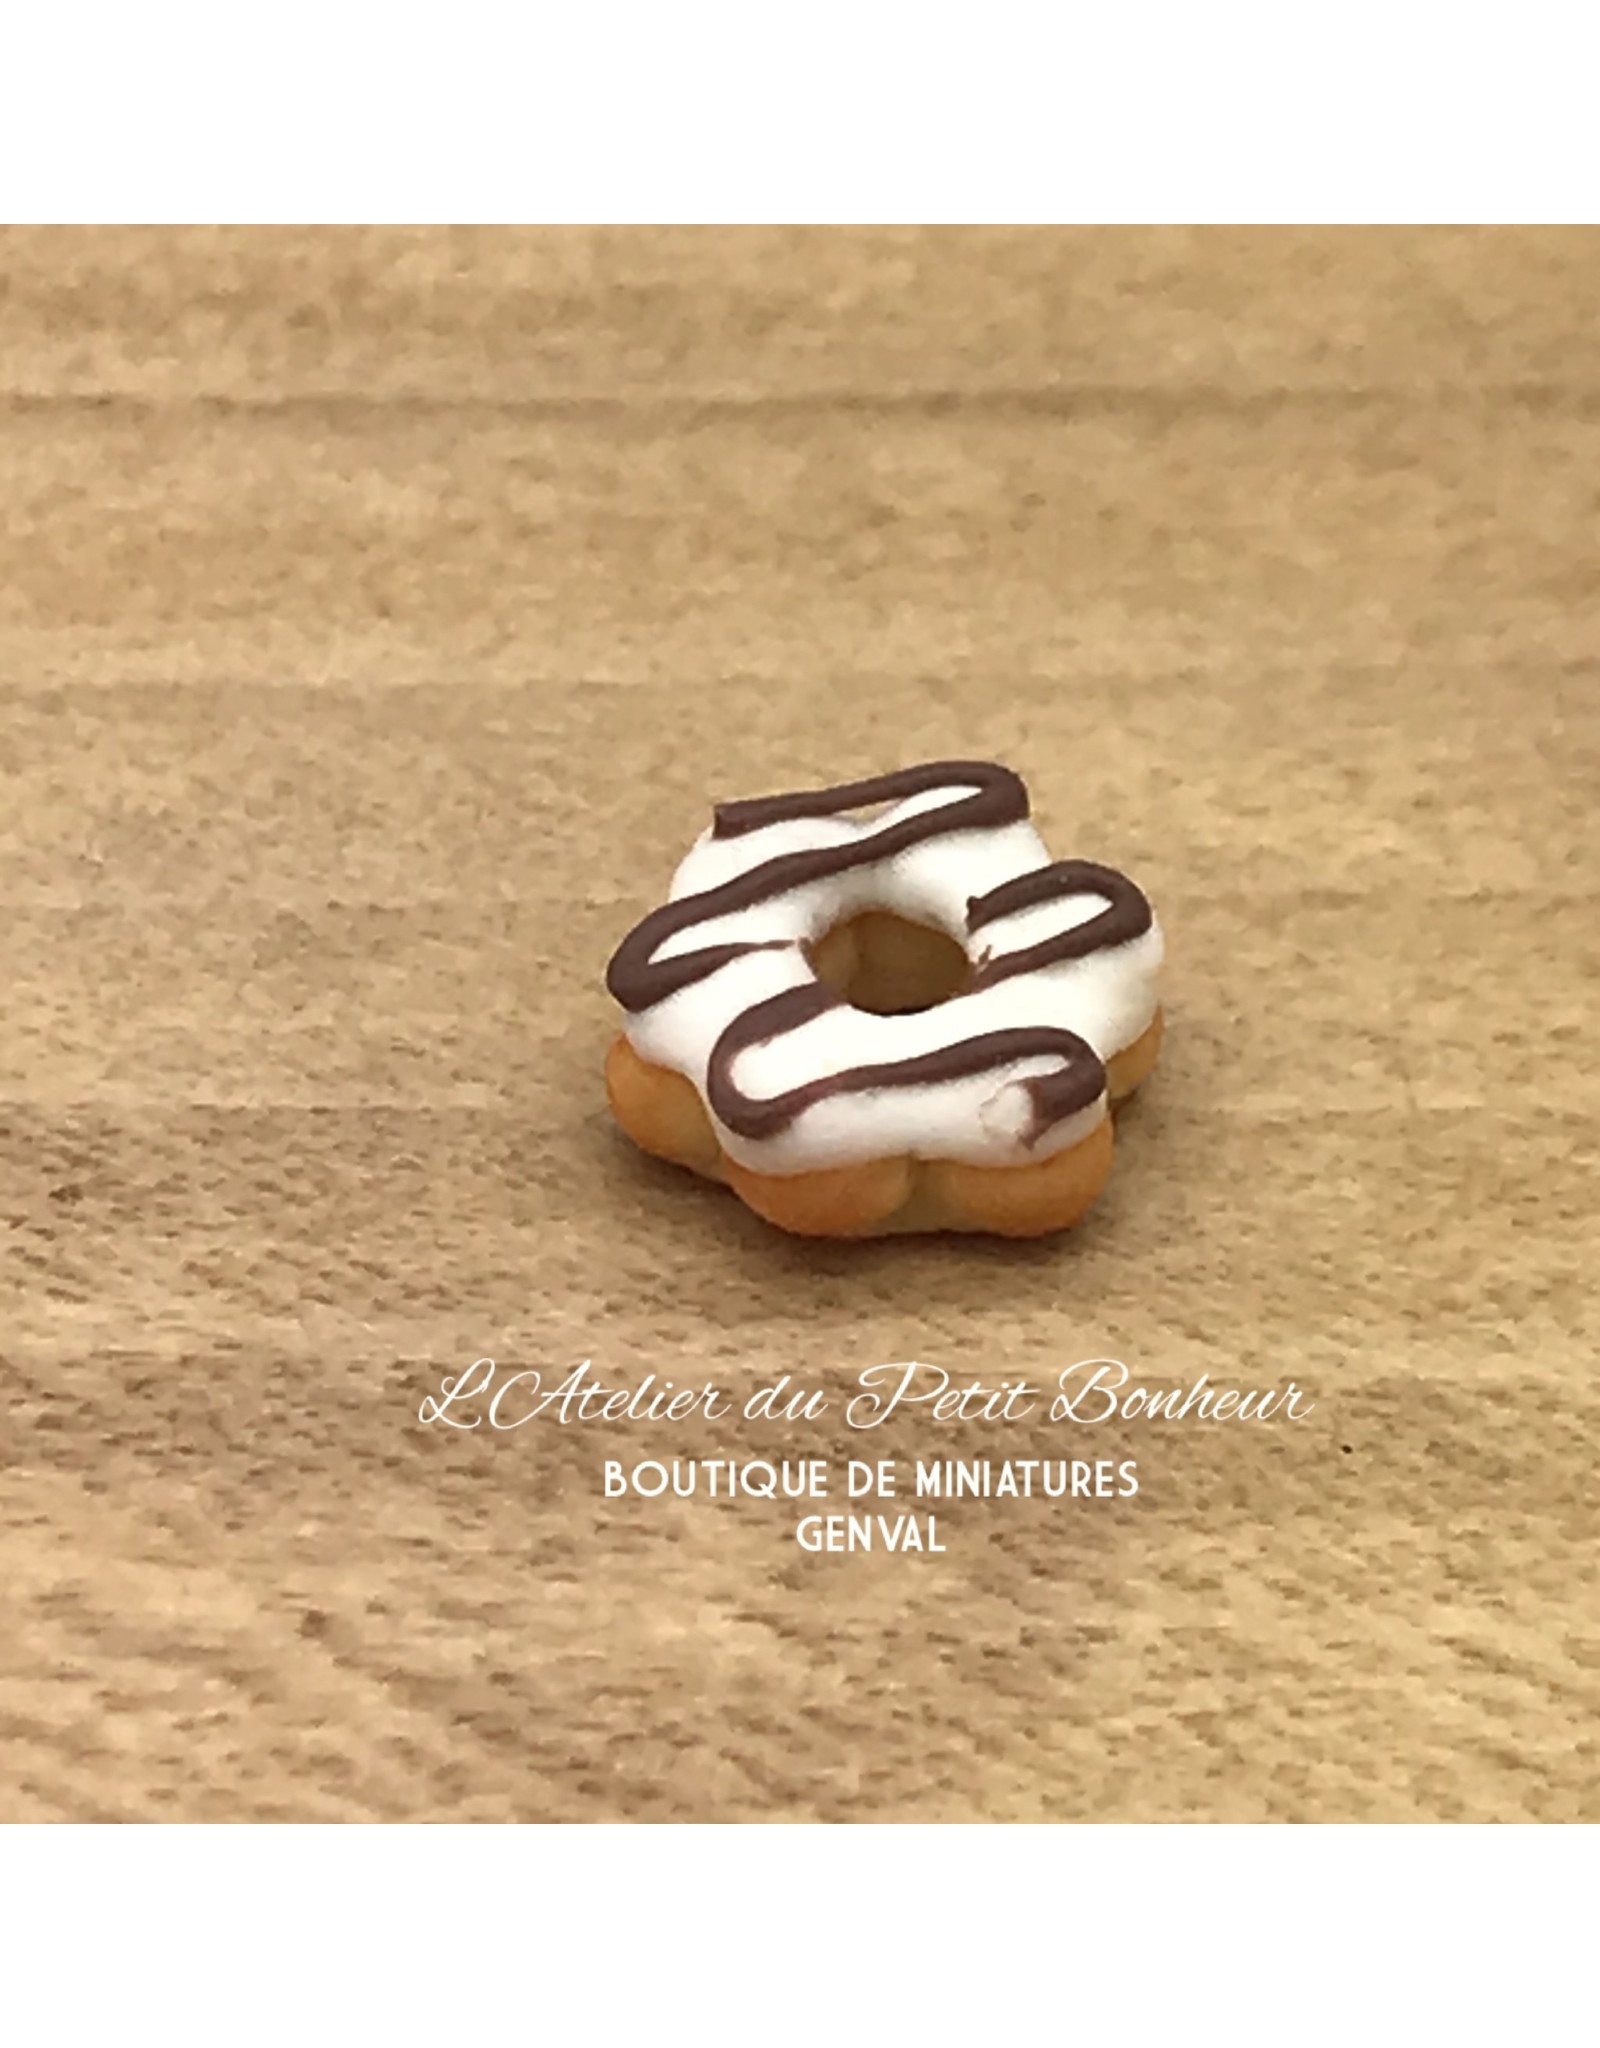 Donut en forme de fleur miniature 1:12